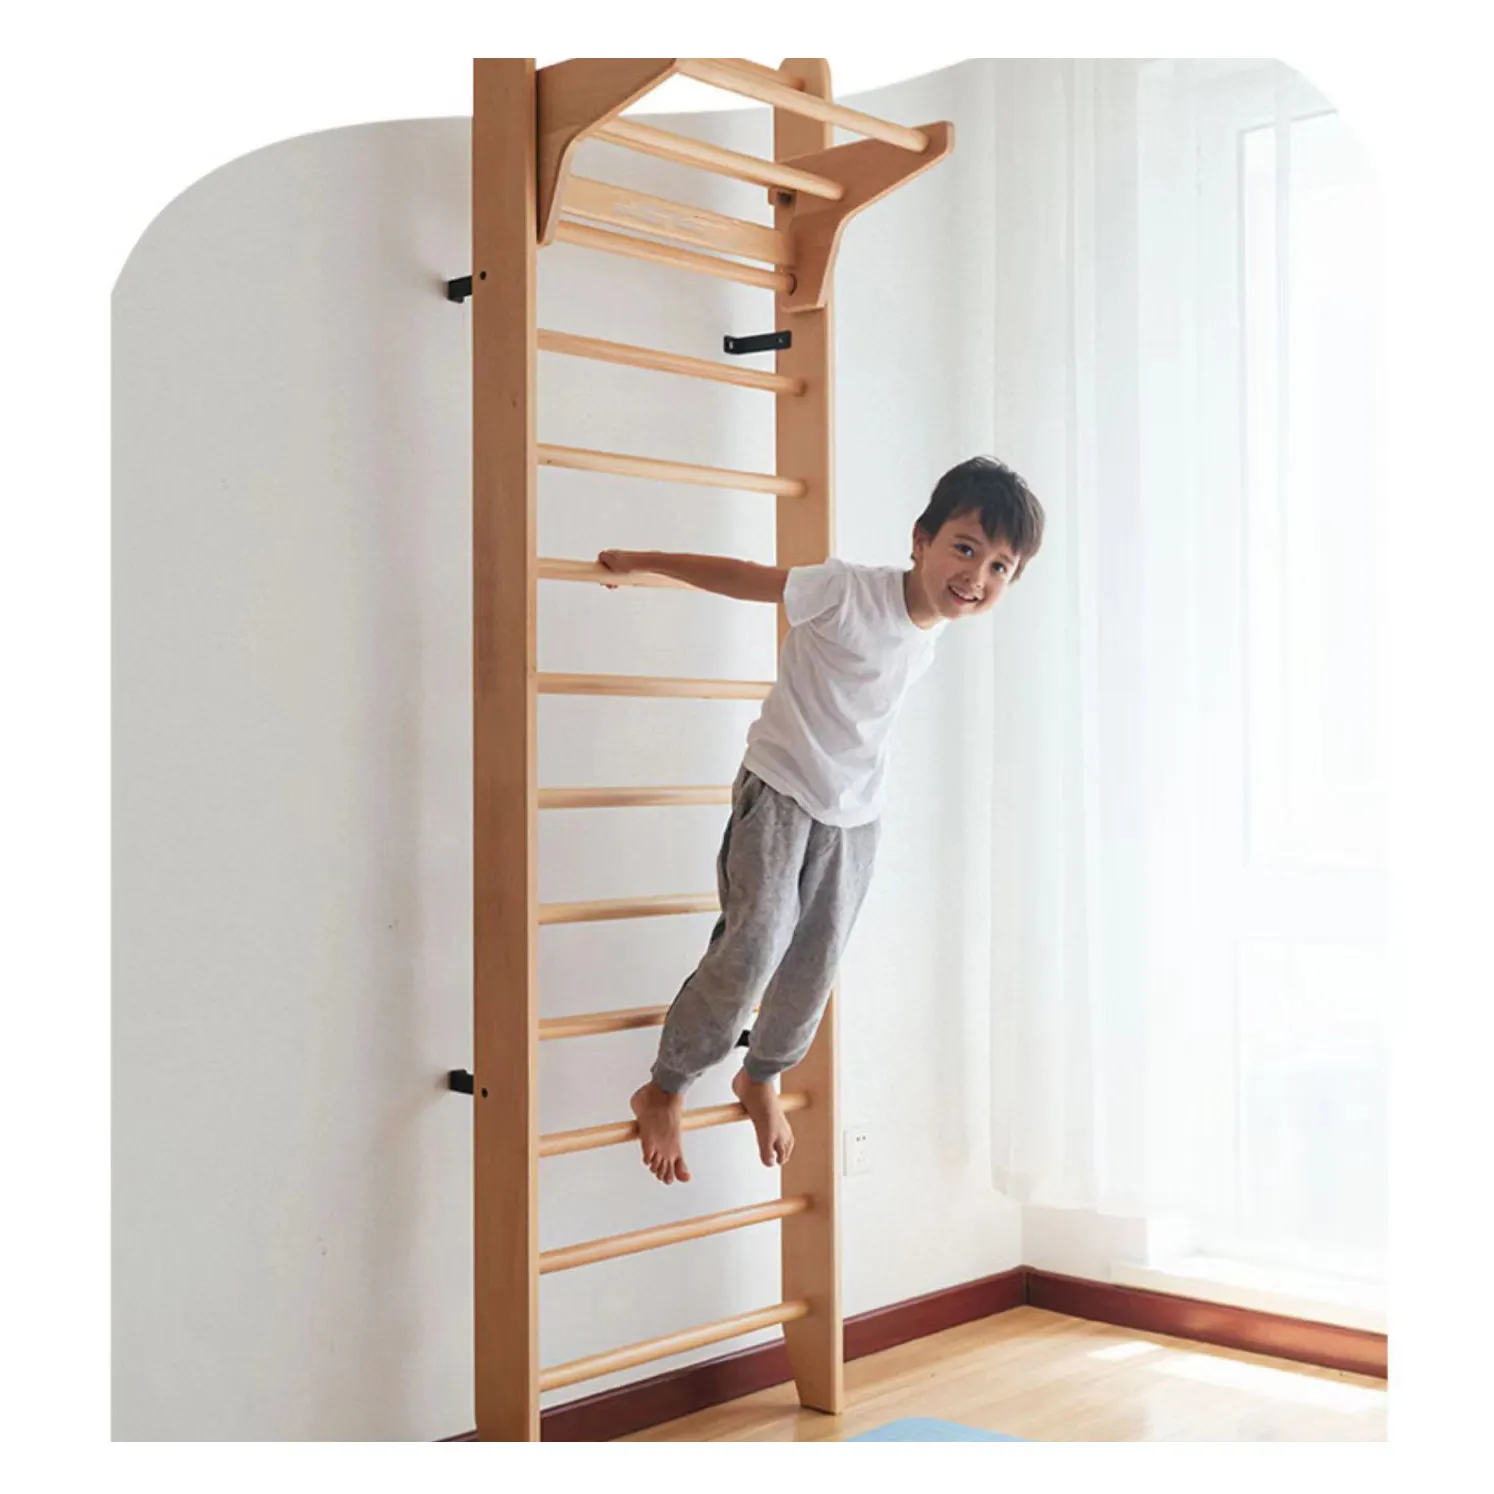 Barres d'escalade intérieures en bois Montessori, barres murales d'escalade réglables, barre horizontale de musculation pour enfants, cadre d'escalade